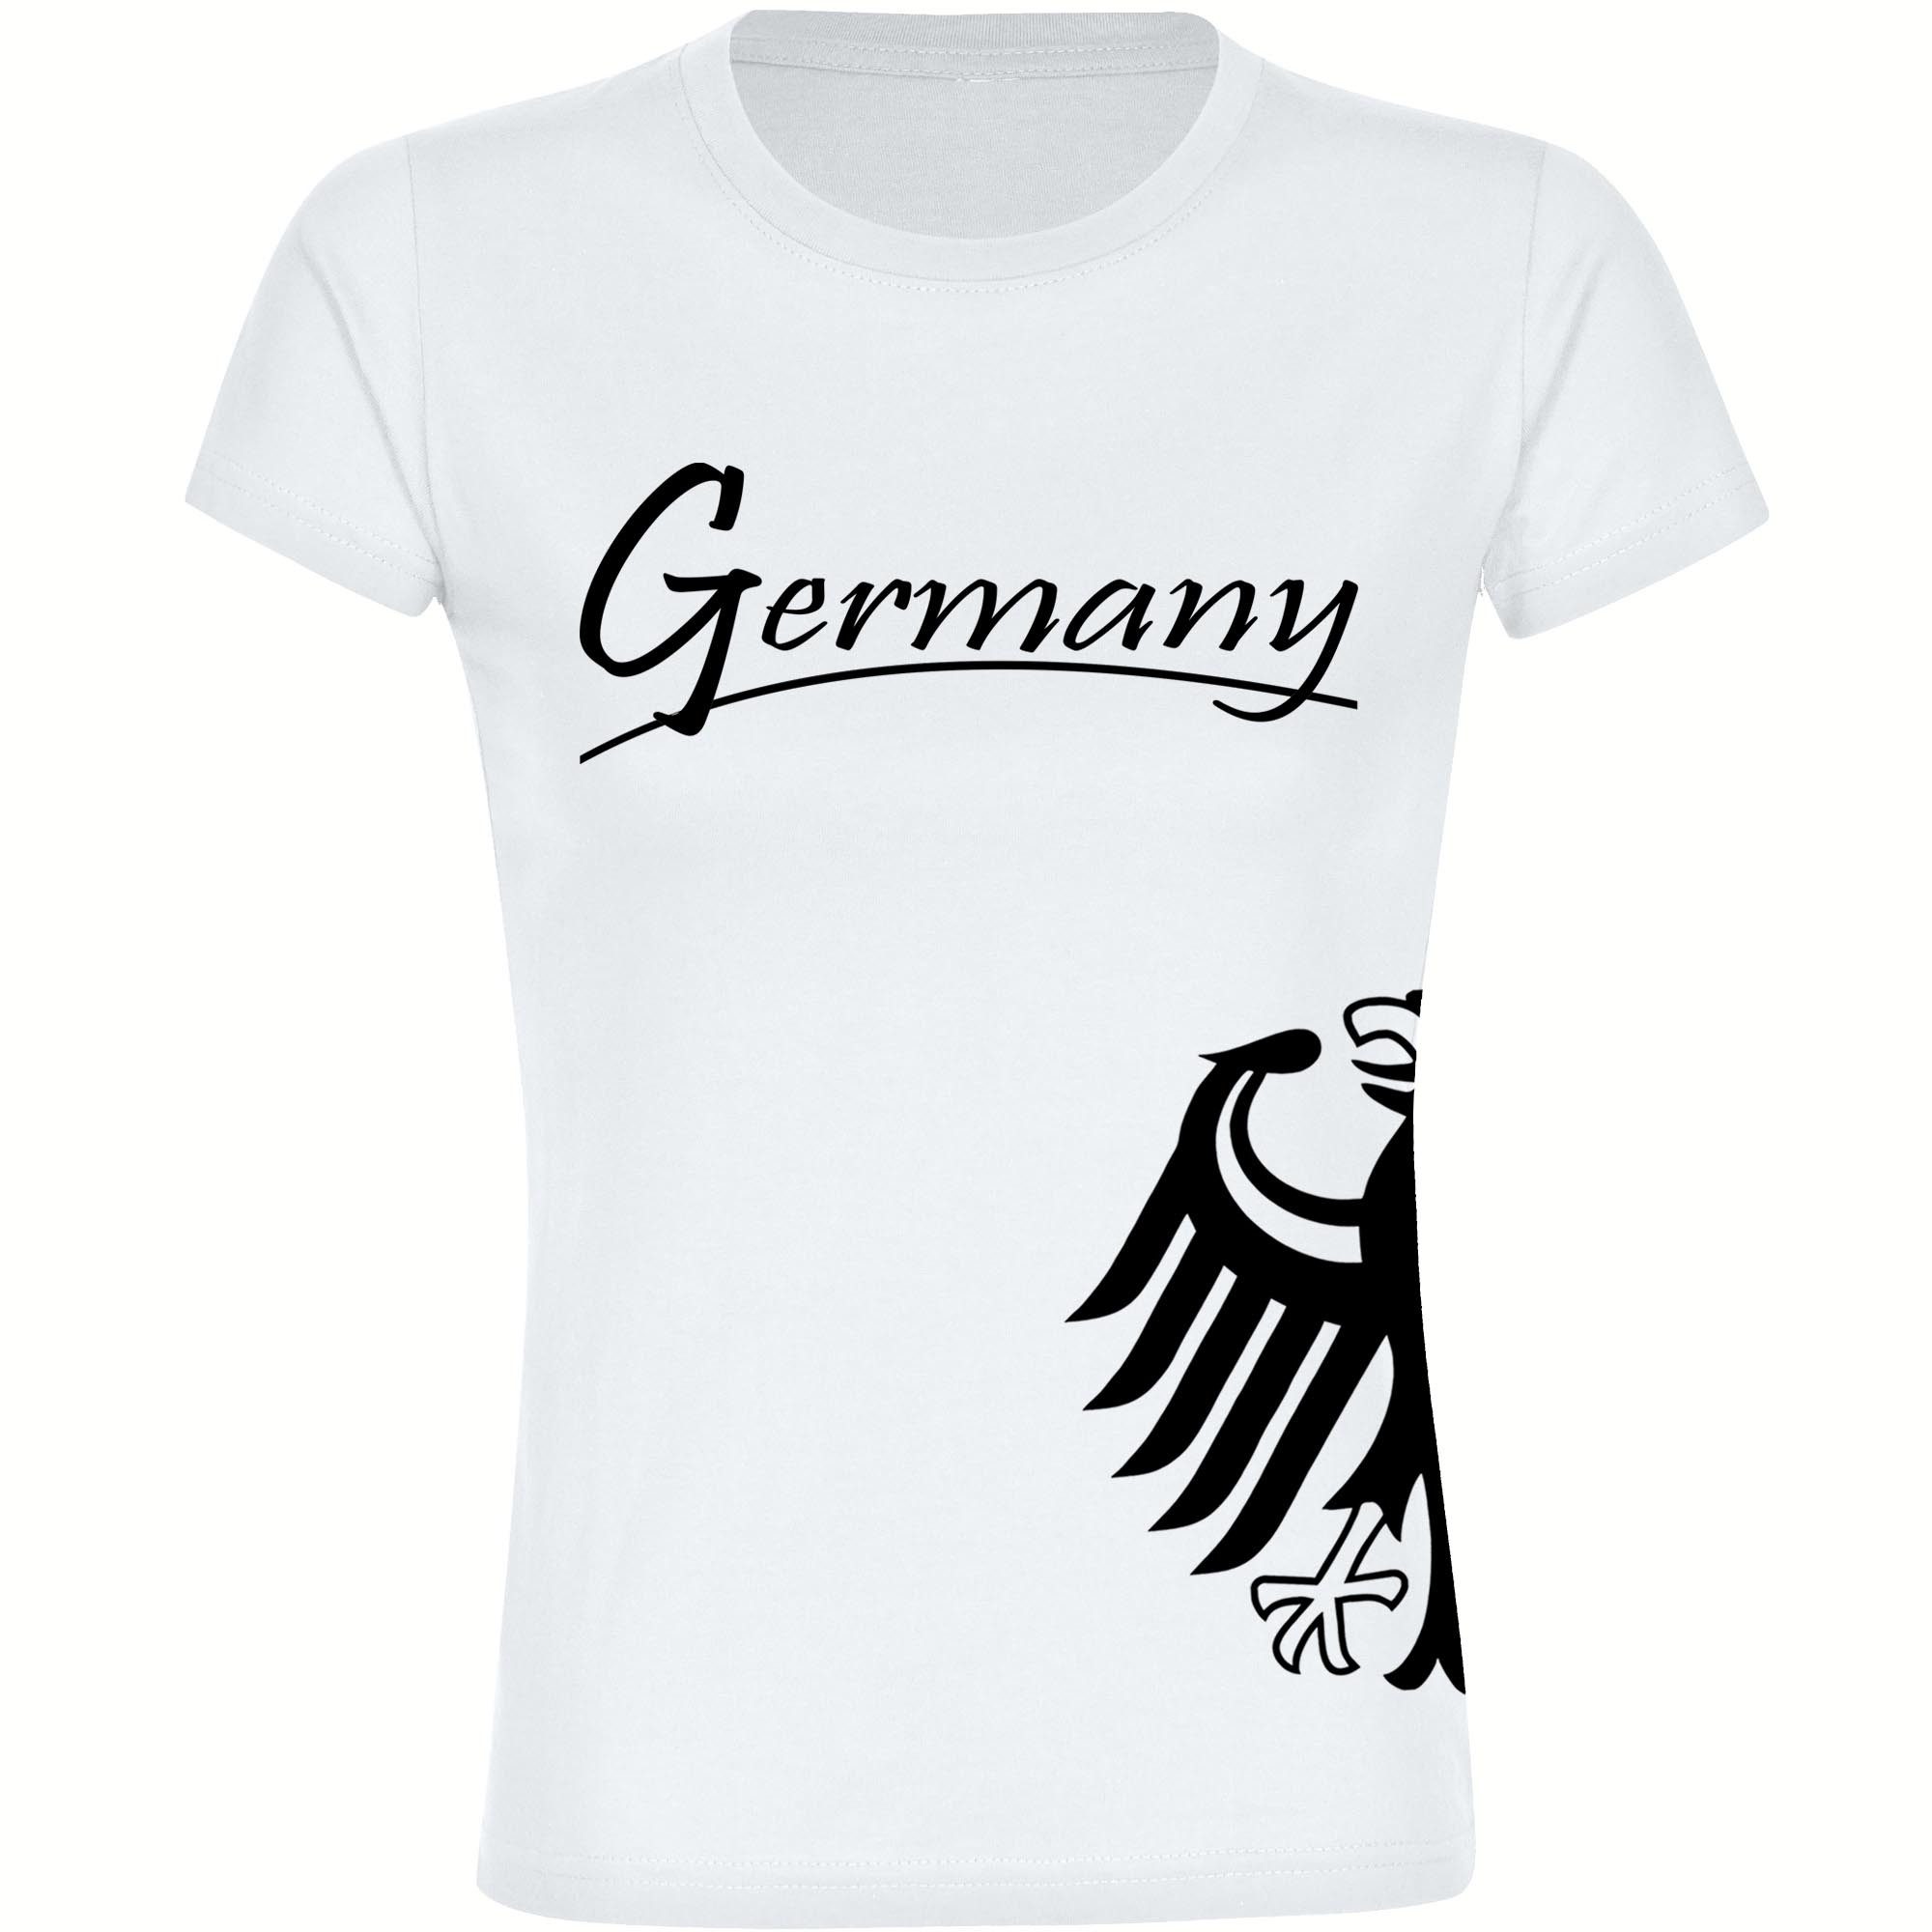 multifanshop T-Shirt Damen Germany - Adler seitlich - Frauen